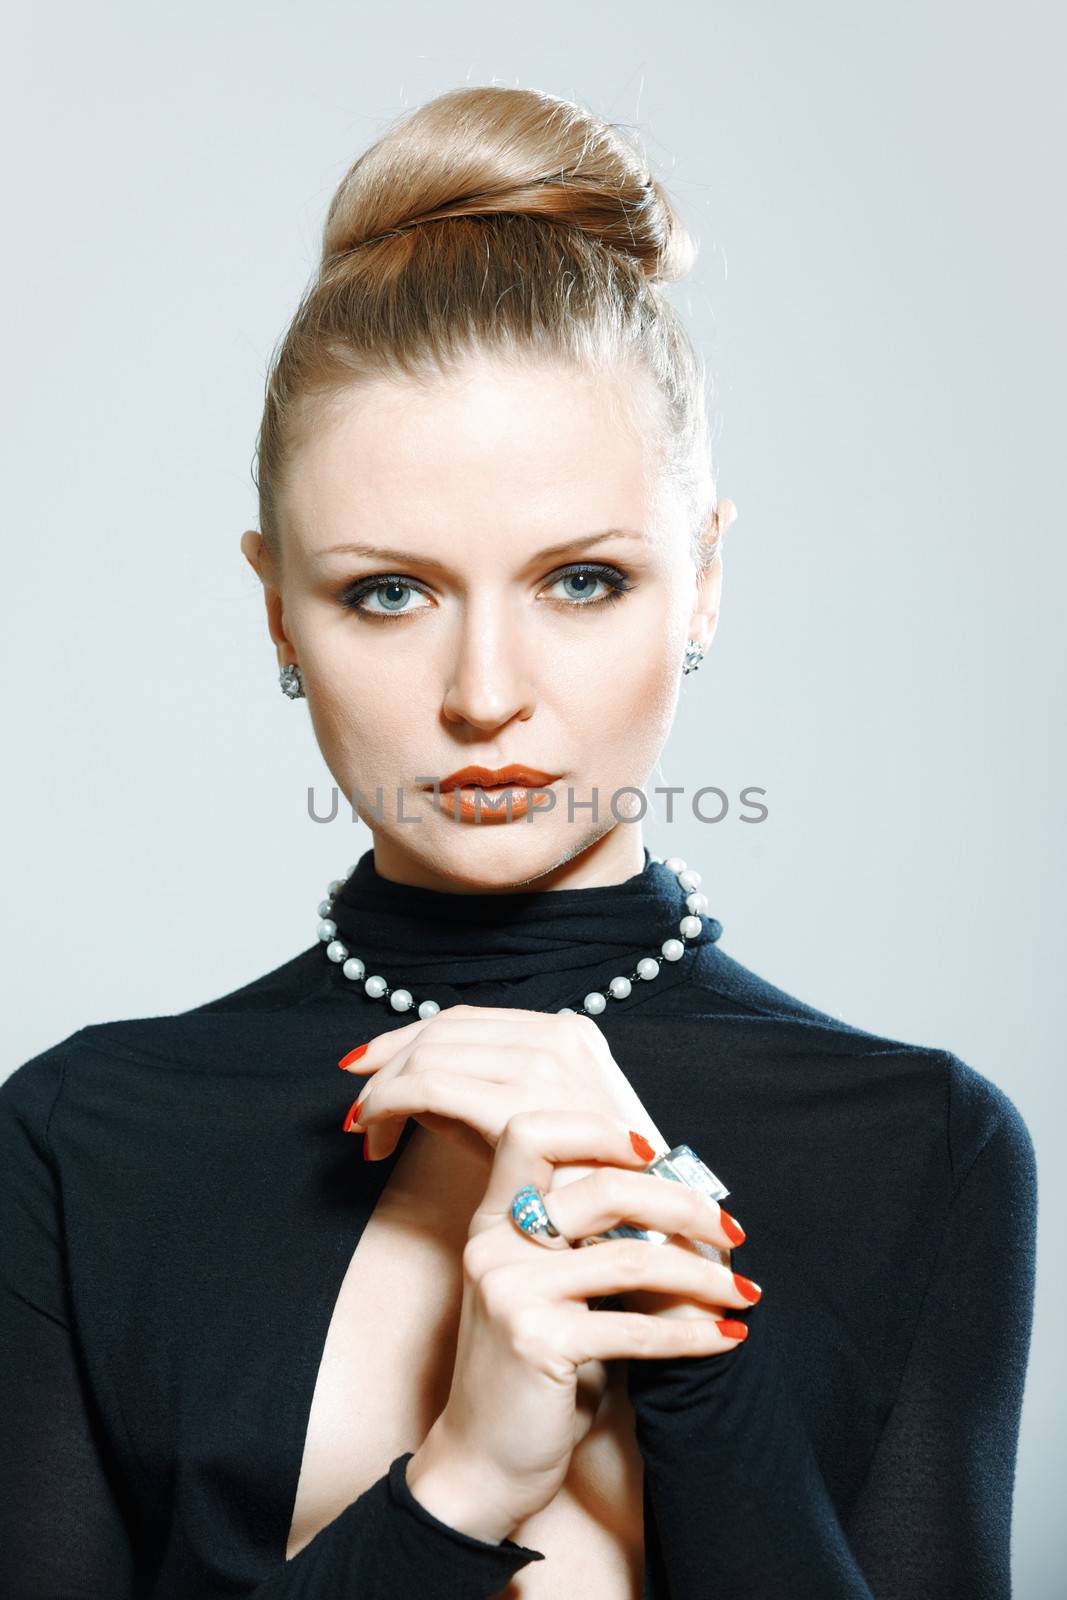 Stylish lady in studio with luxurious jewelry